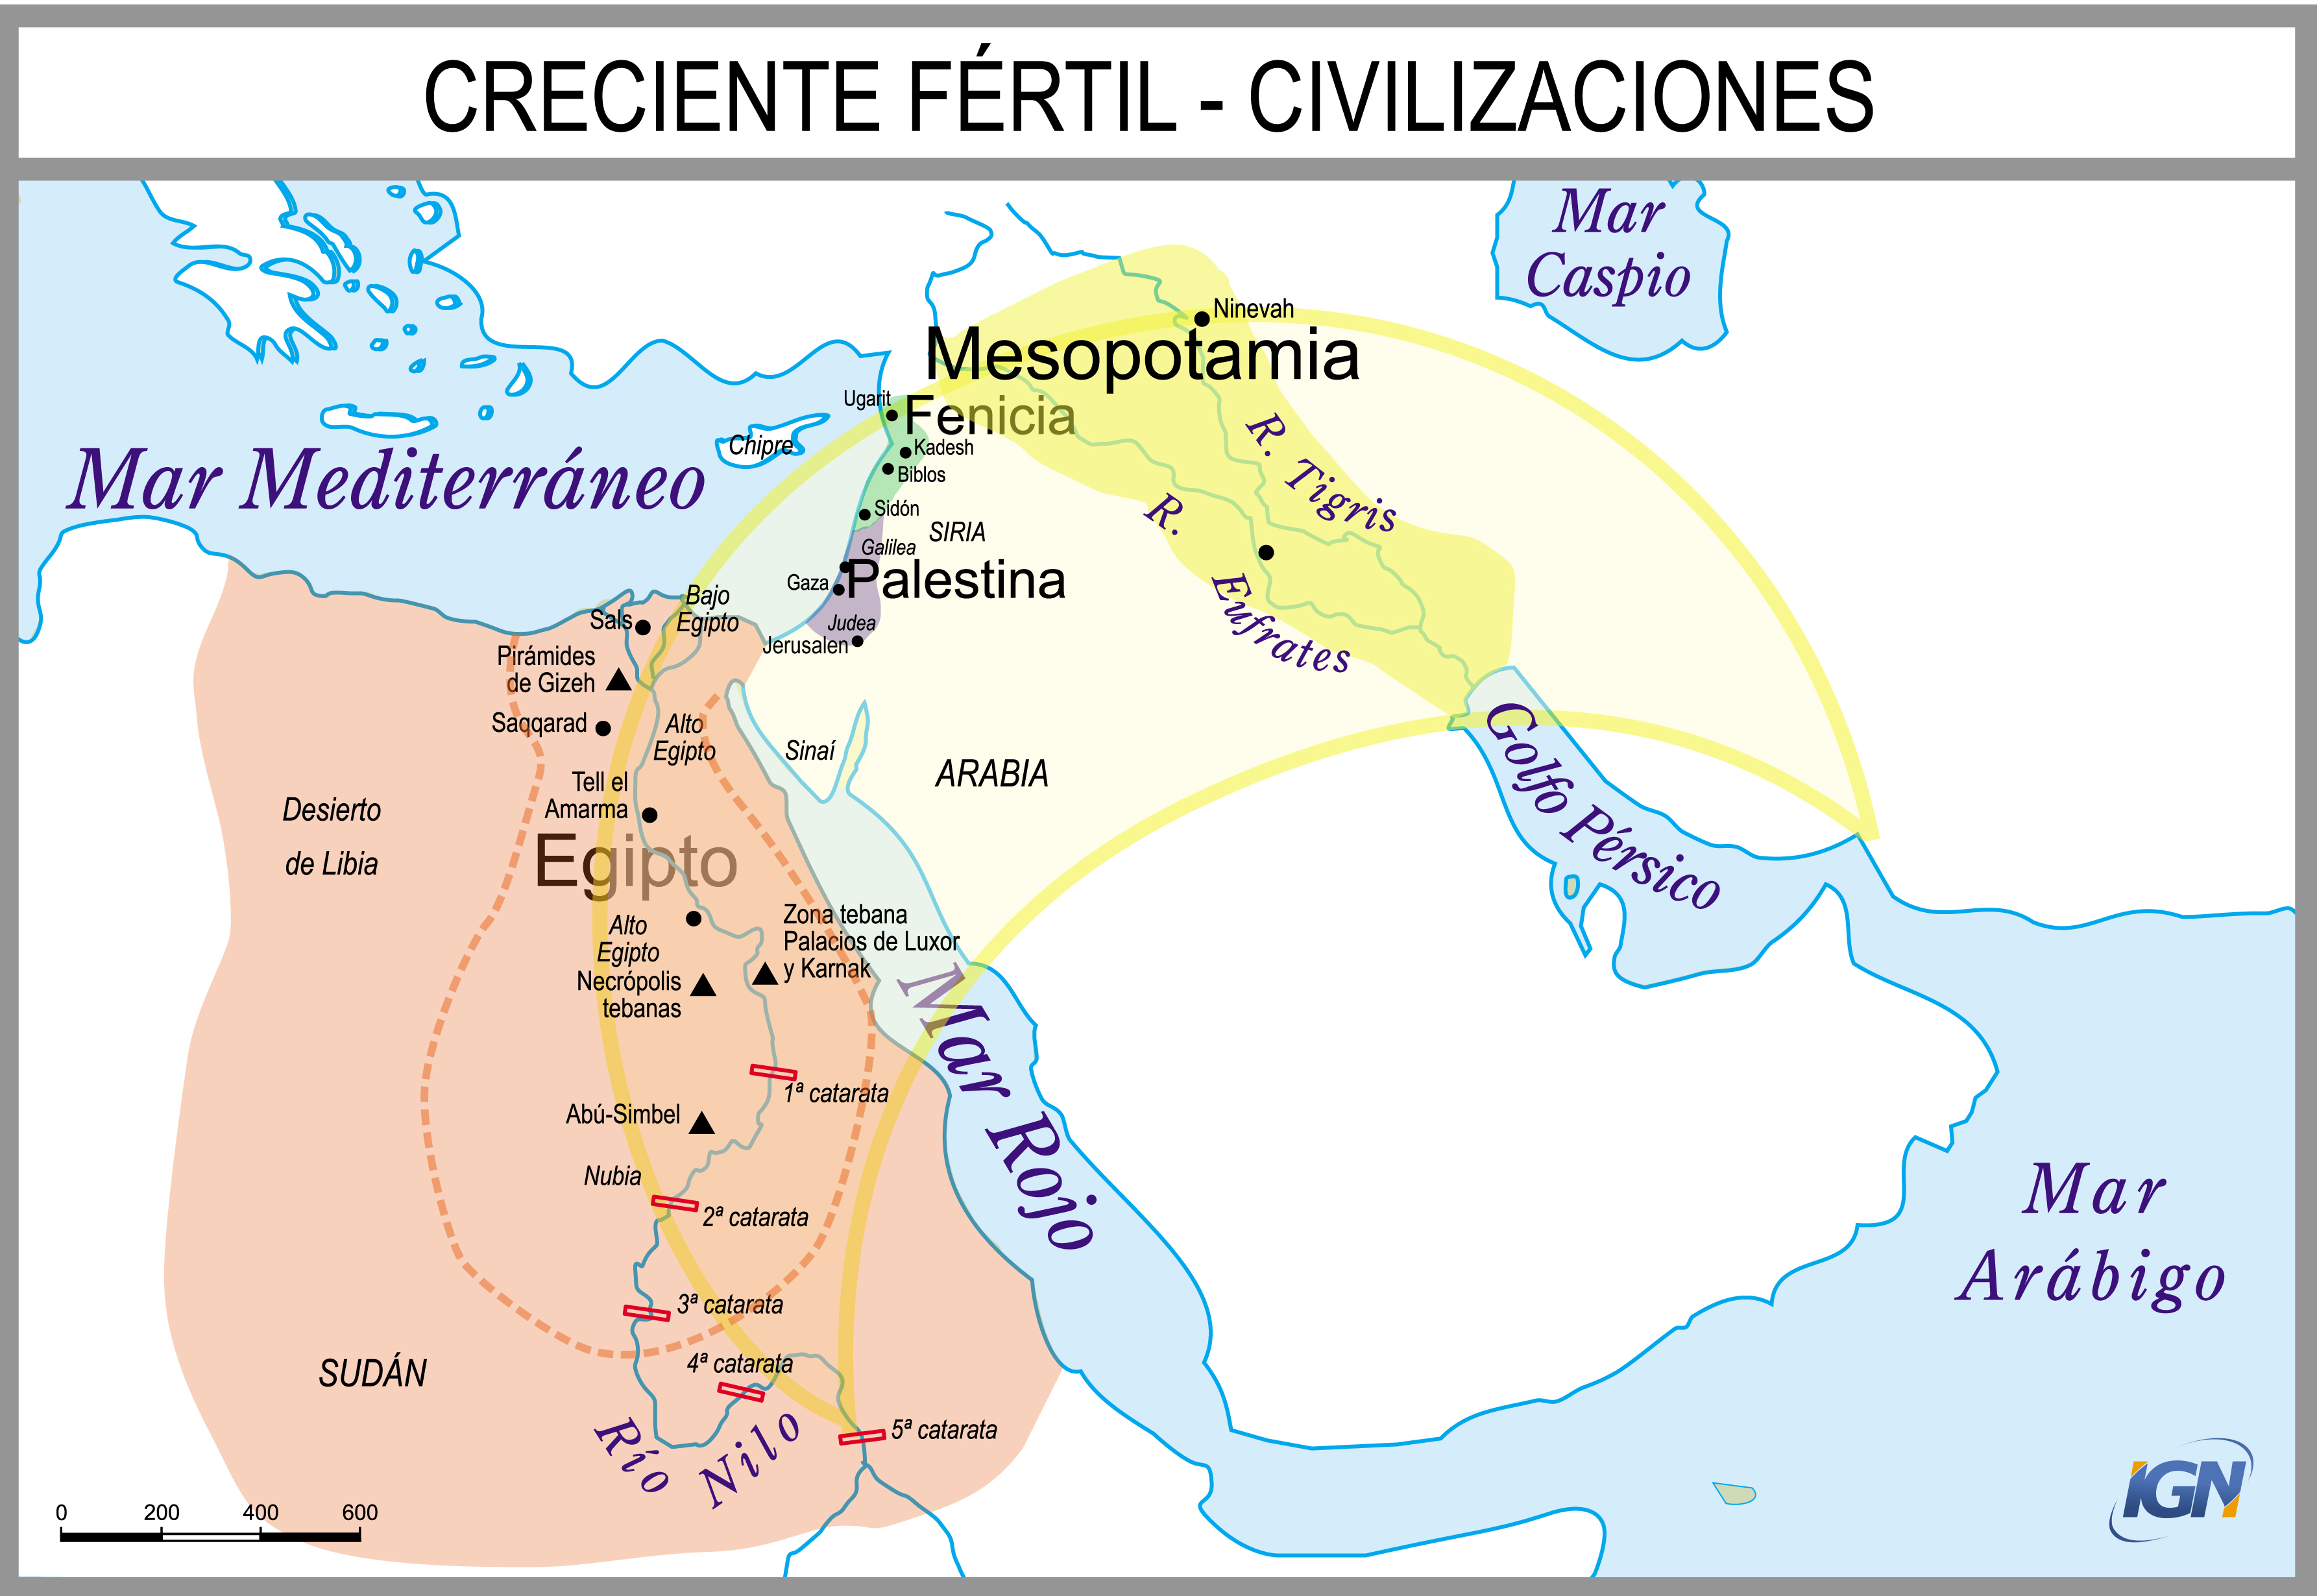 Mapa Histórico creciente fértil y civilizaciones